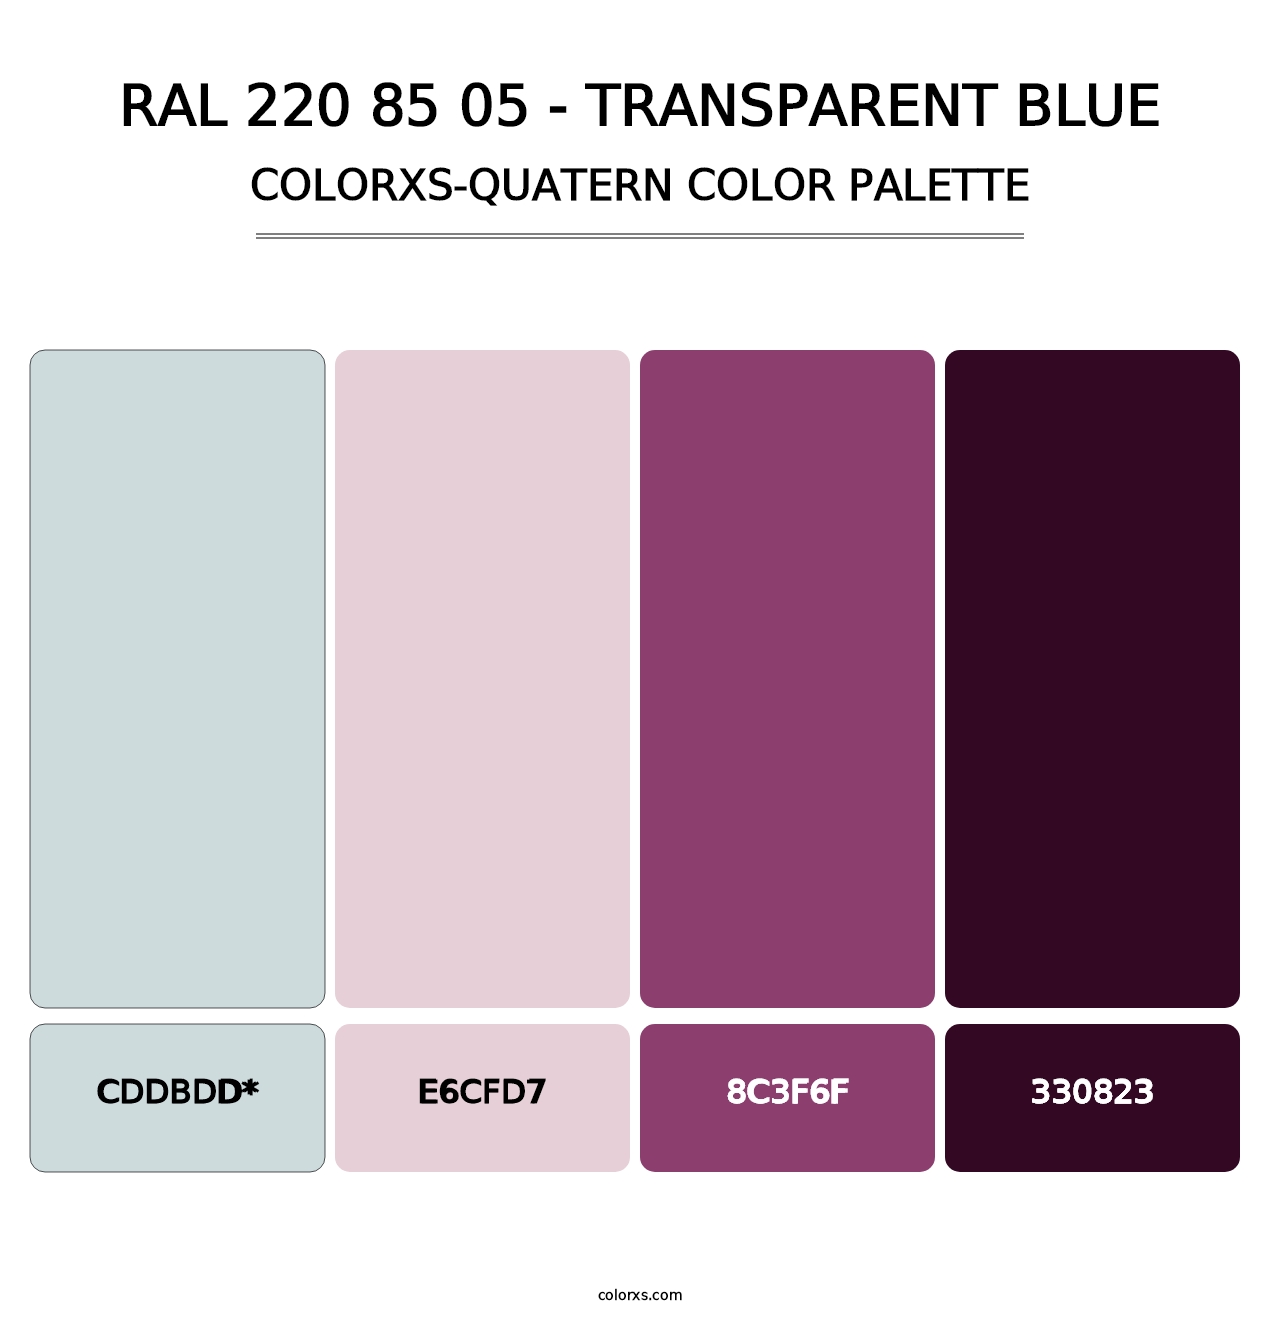 RAL 220 85 05 - Transparent Blue - Colorxs Quatern Palette